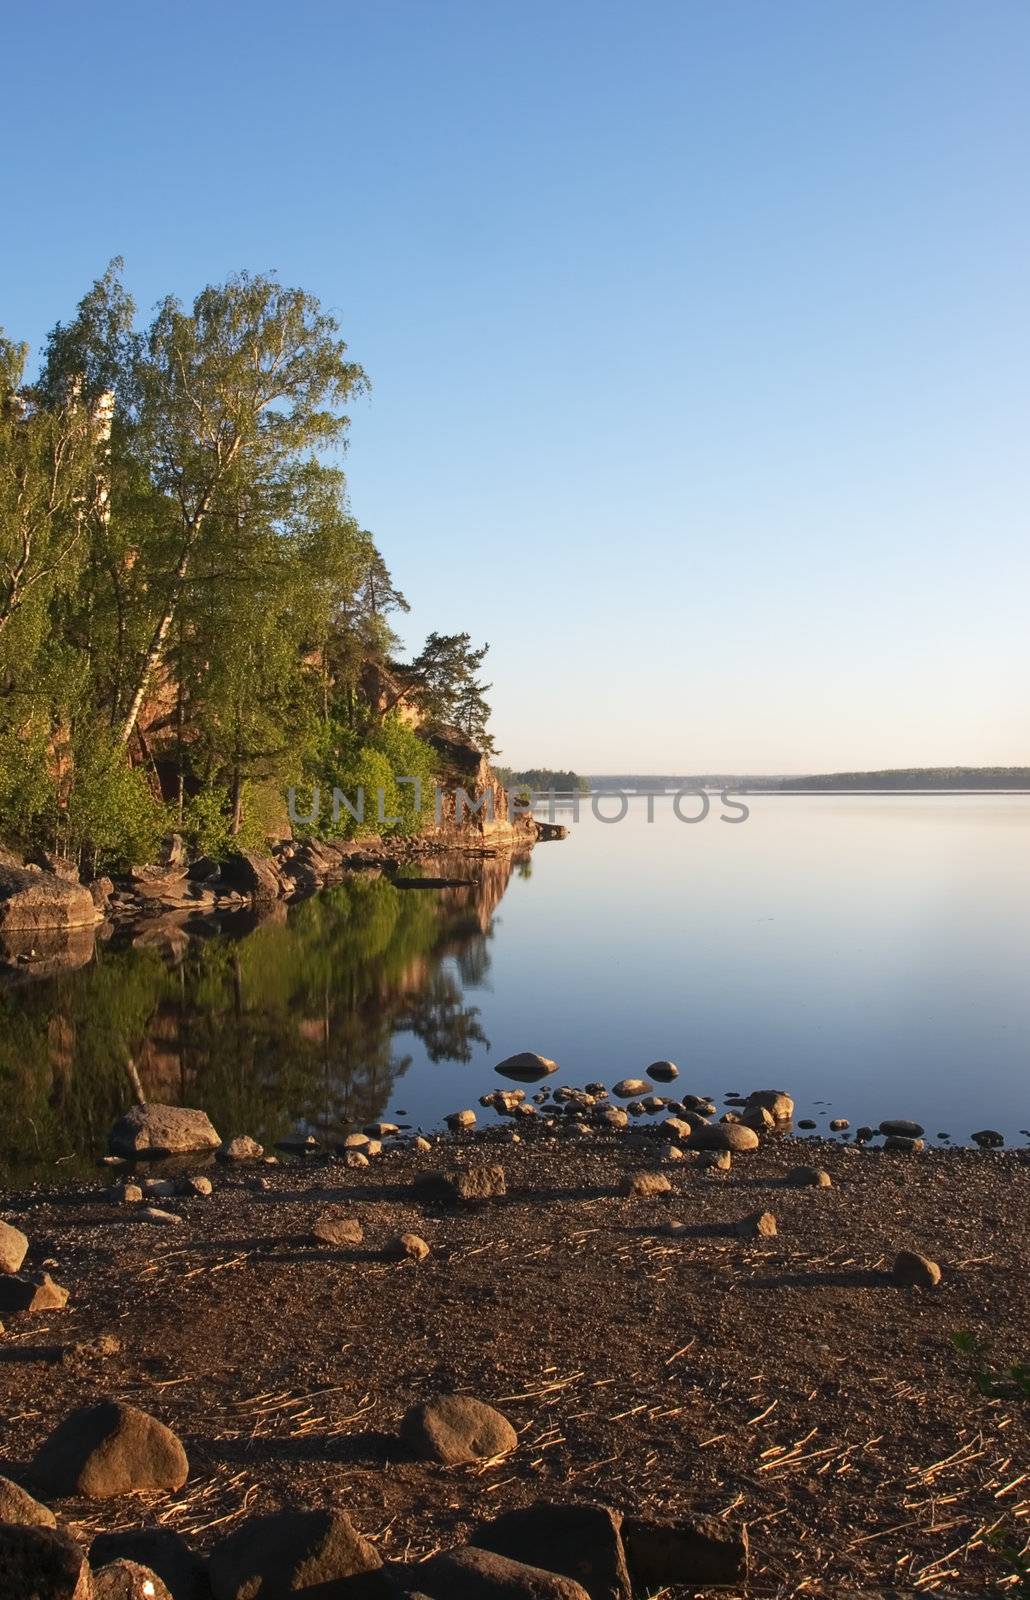 Early morning in Kareliya by NickS